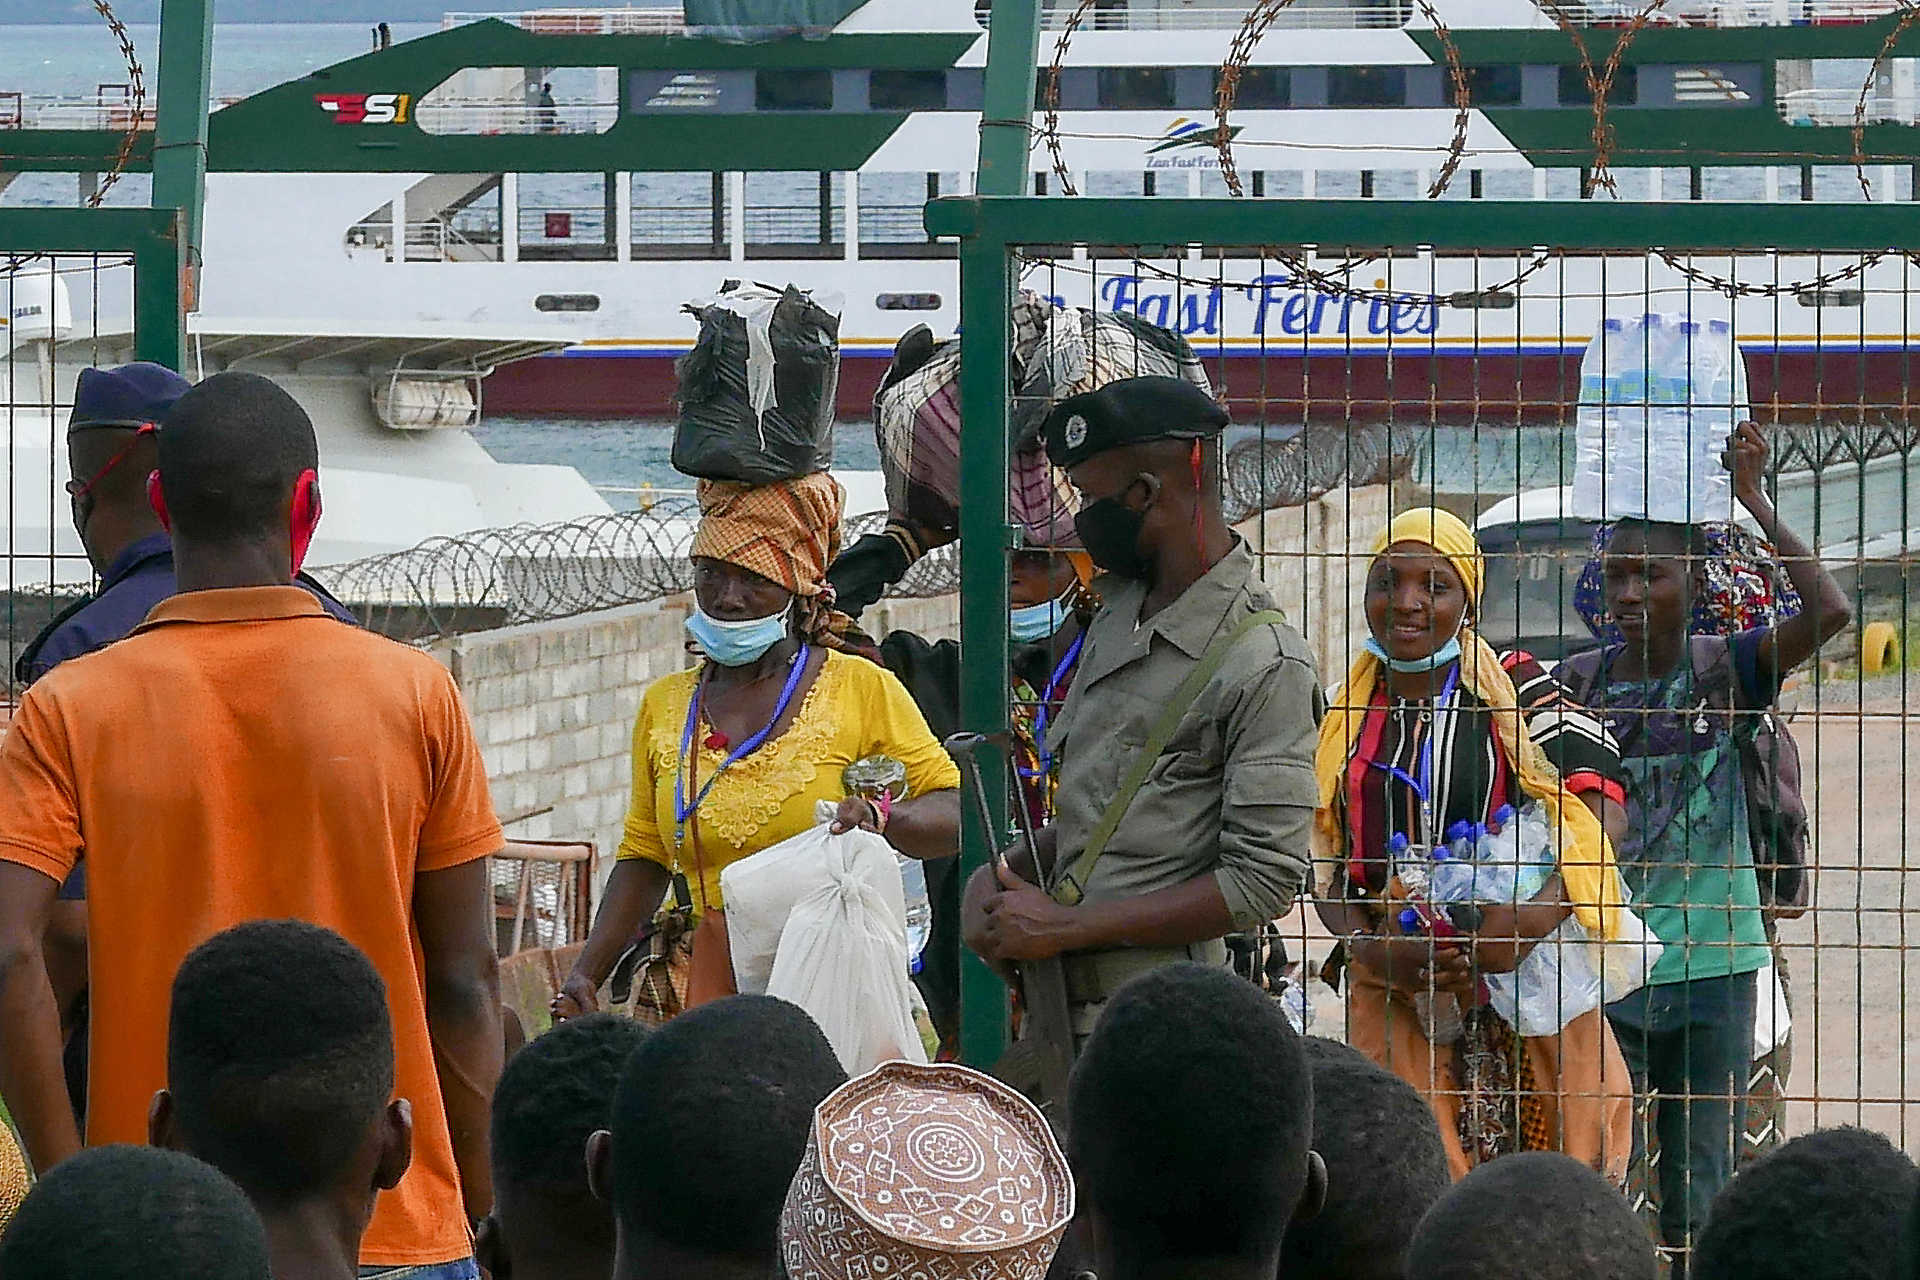 El movimiento de desplazados "no termina con este barco" que llegó a Pemba